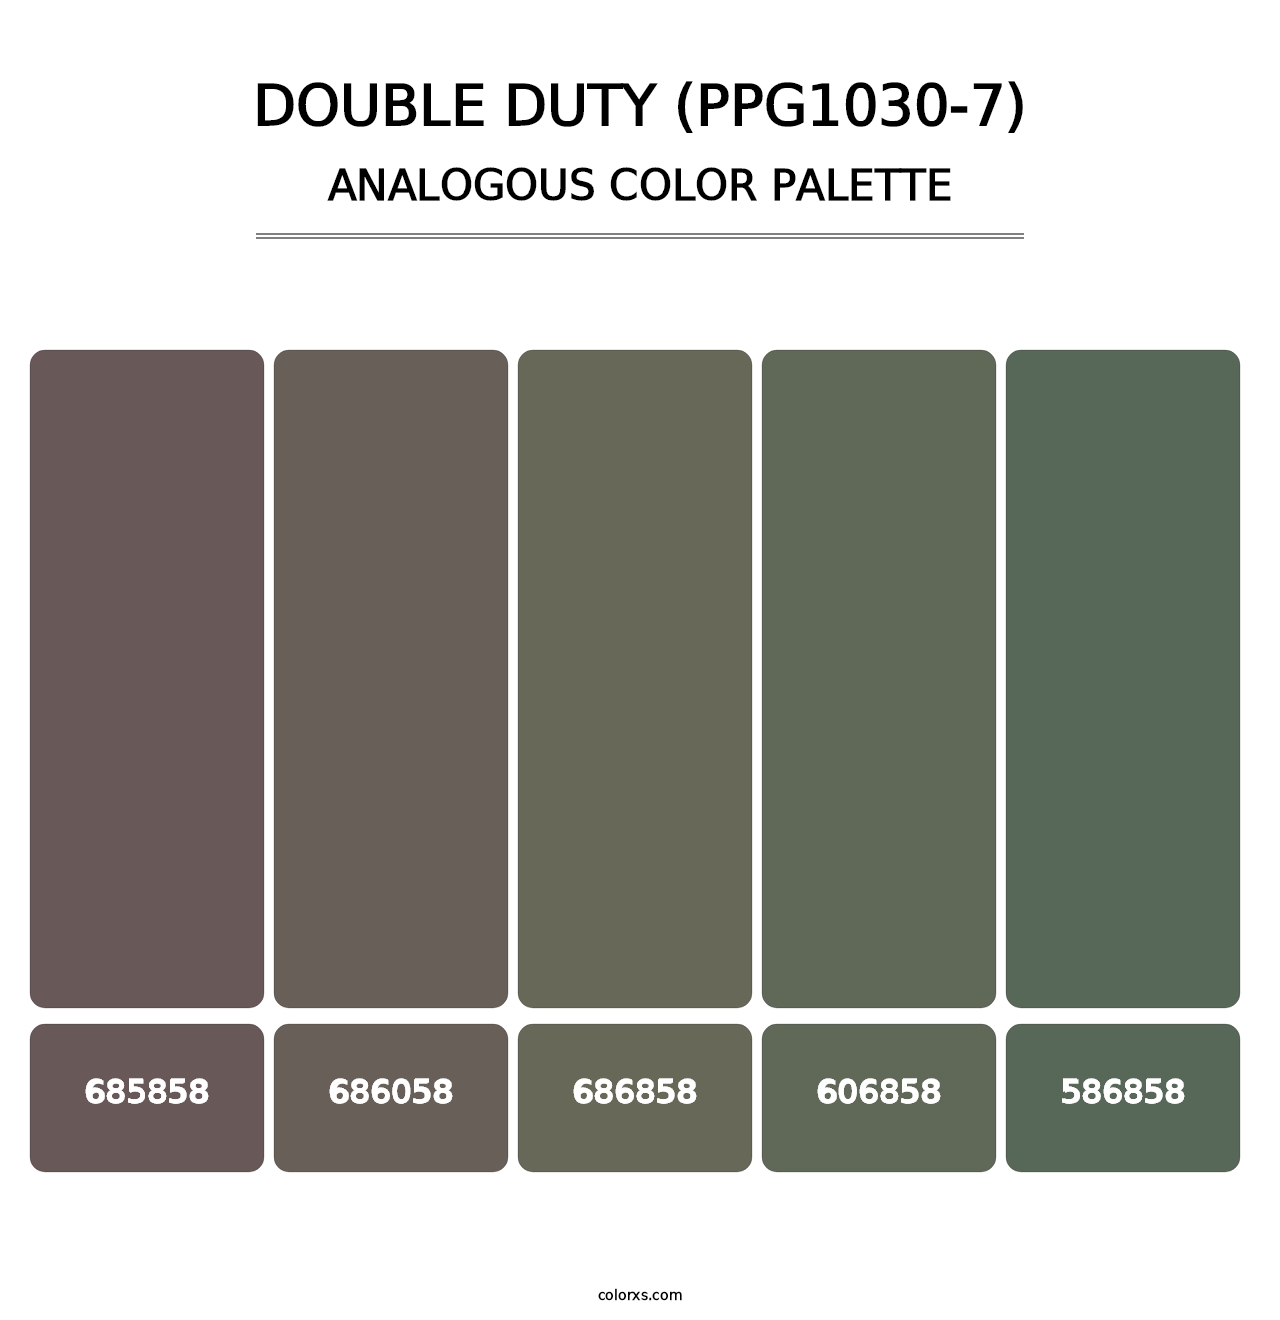 Double Duty (PPG1030-7) - Analogous Color Palette